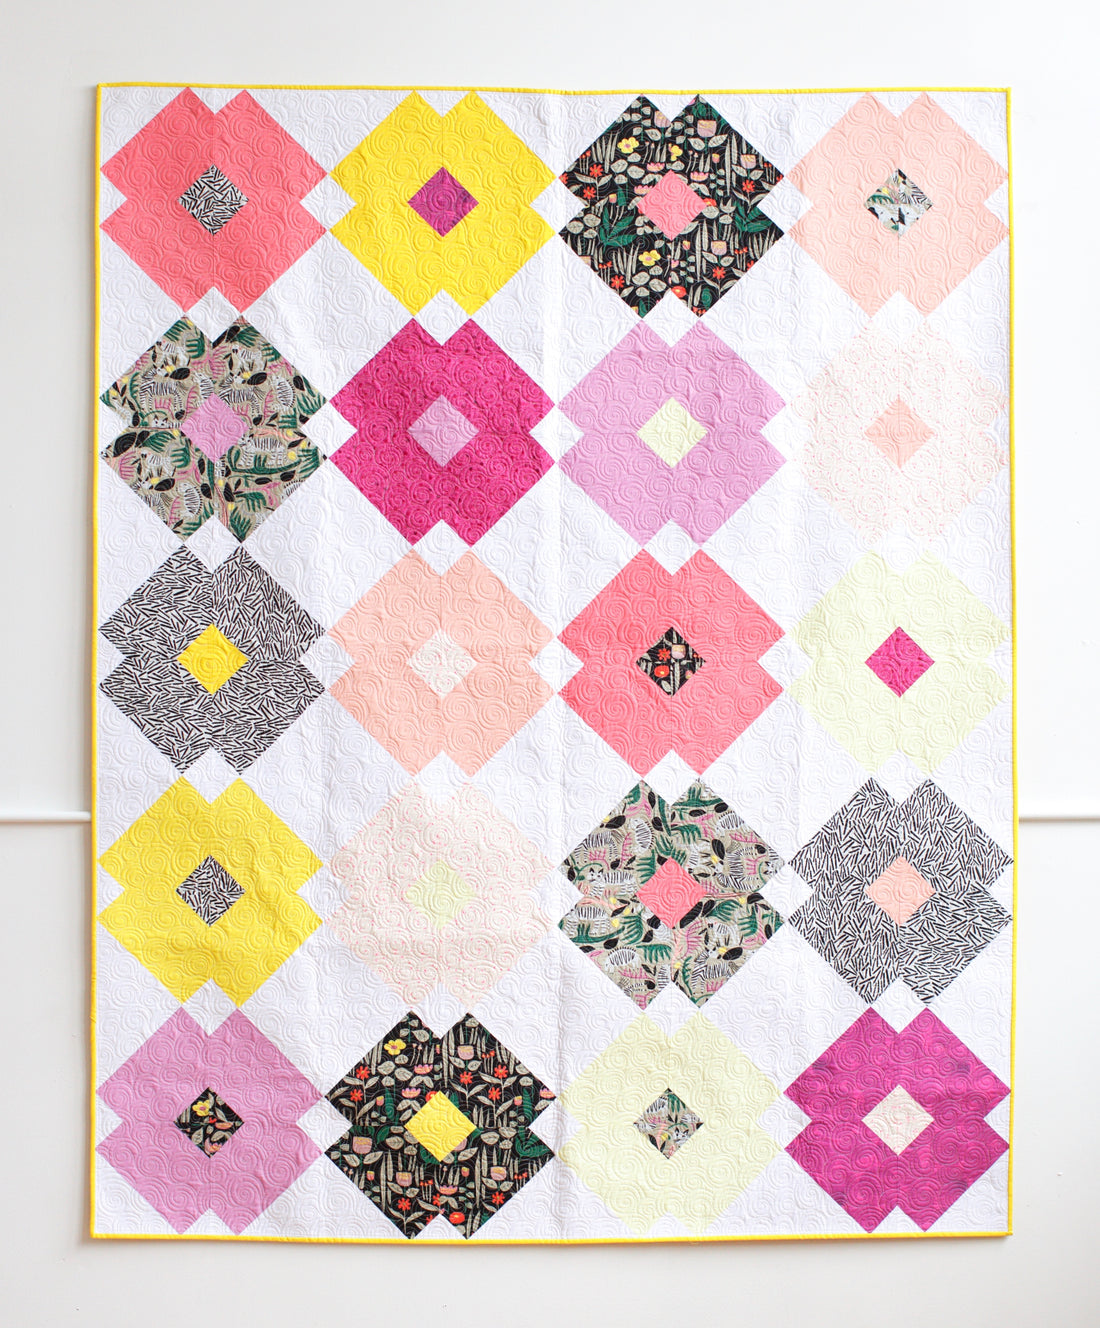 Flower Tile Quilt - The Leah Duncan One